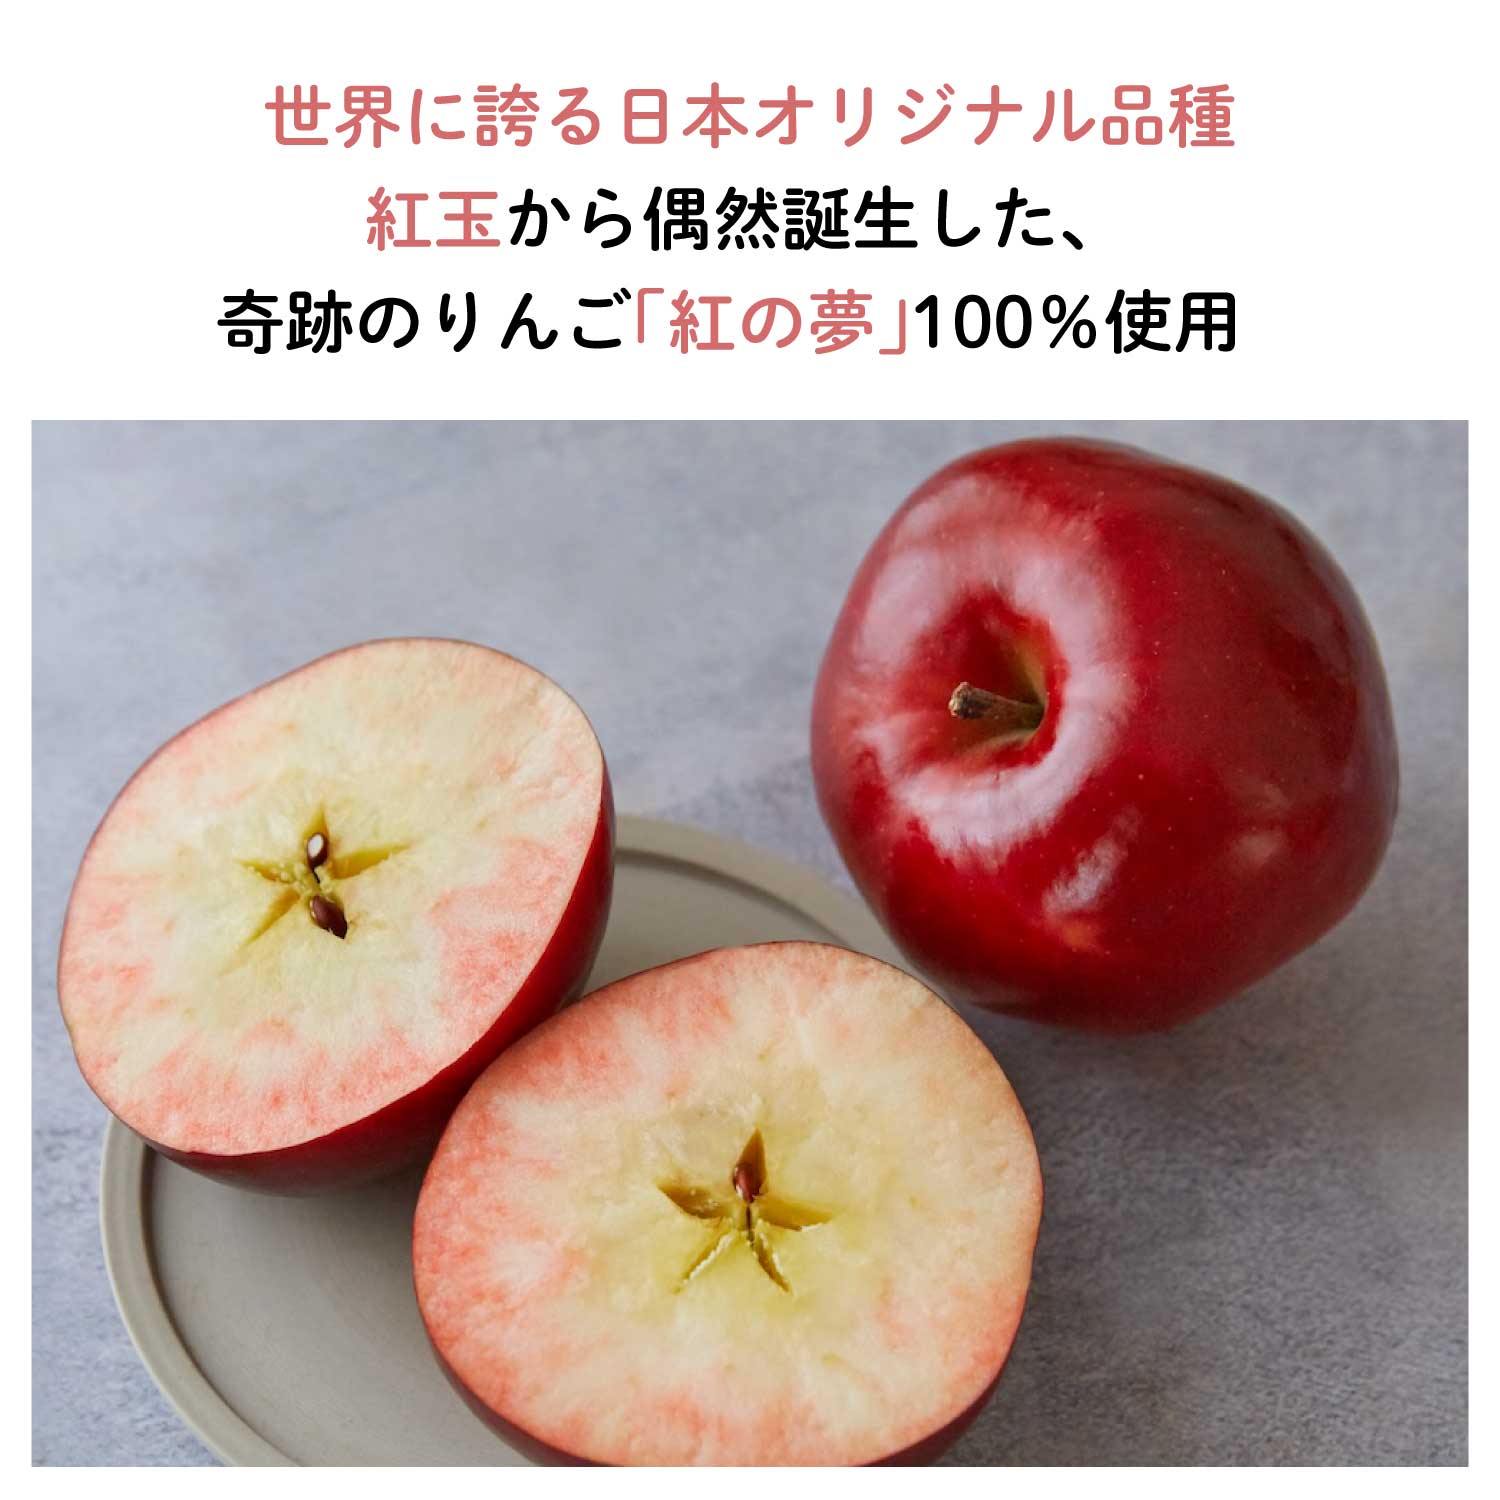 奇跡のりんご”紅の夢”アップルチョコレート